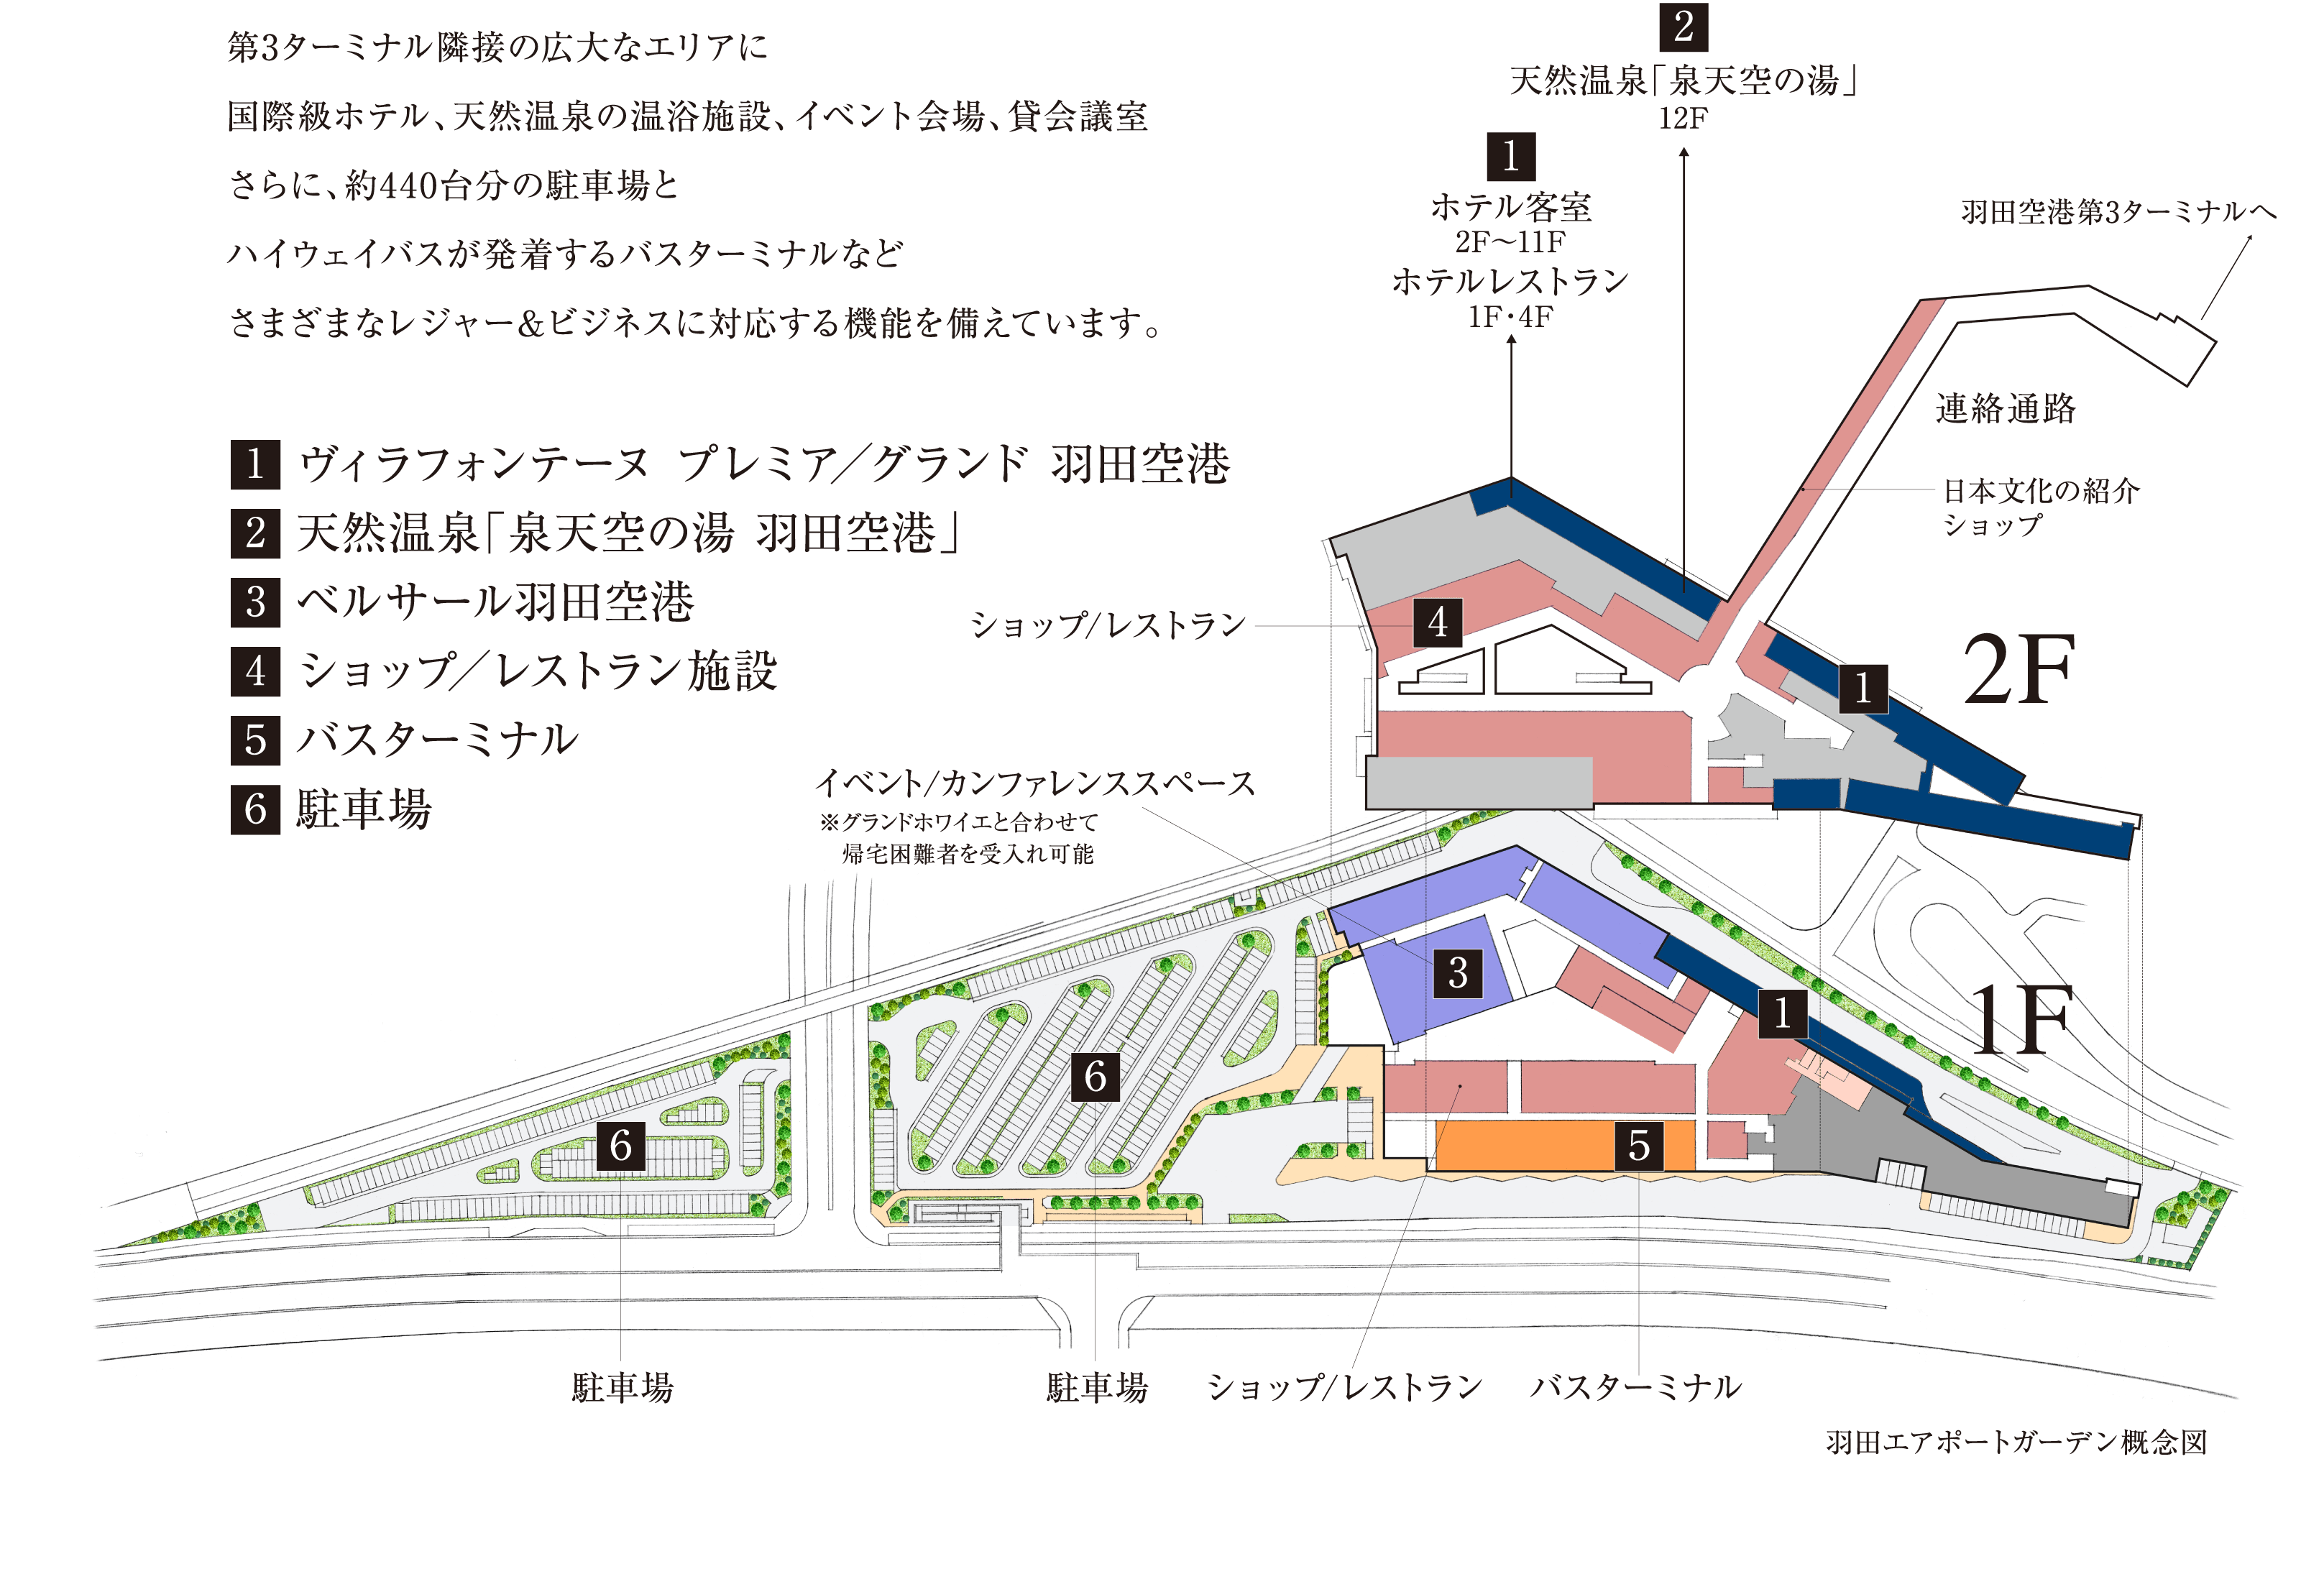 羽田エアポートガーデン概念図